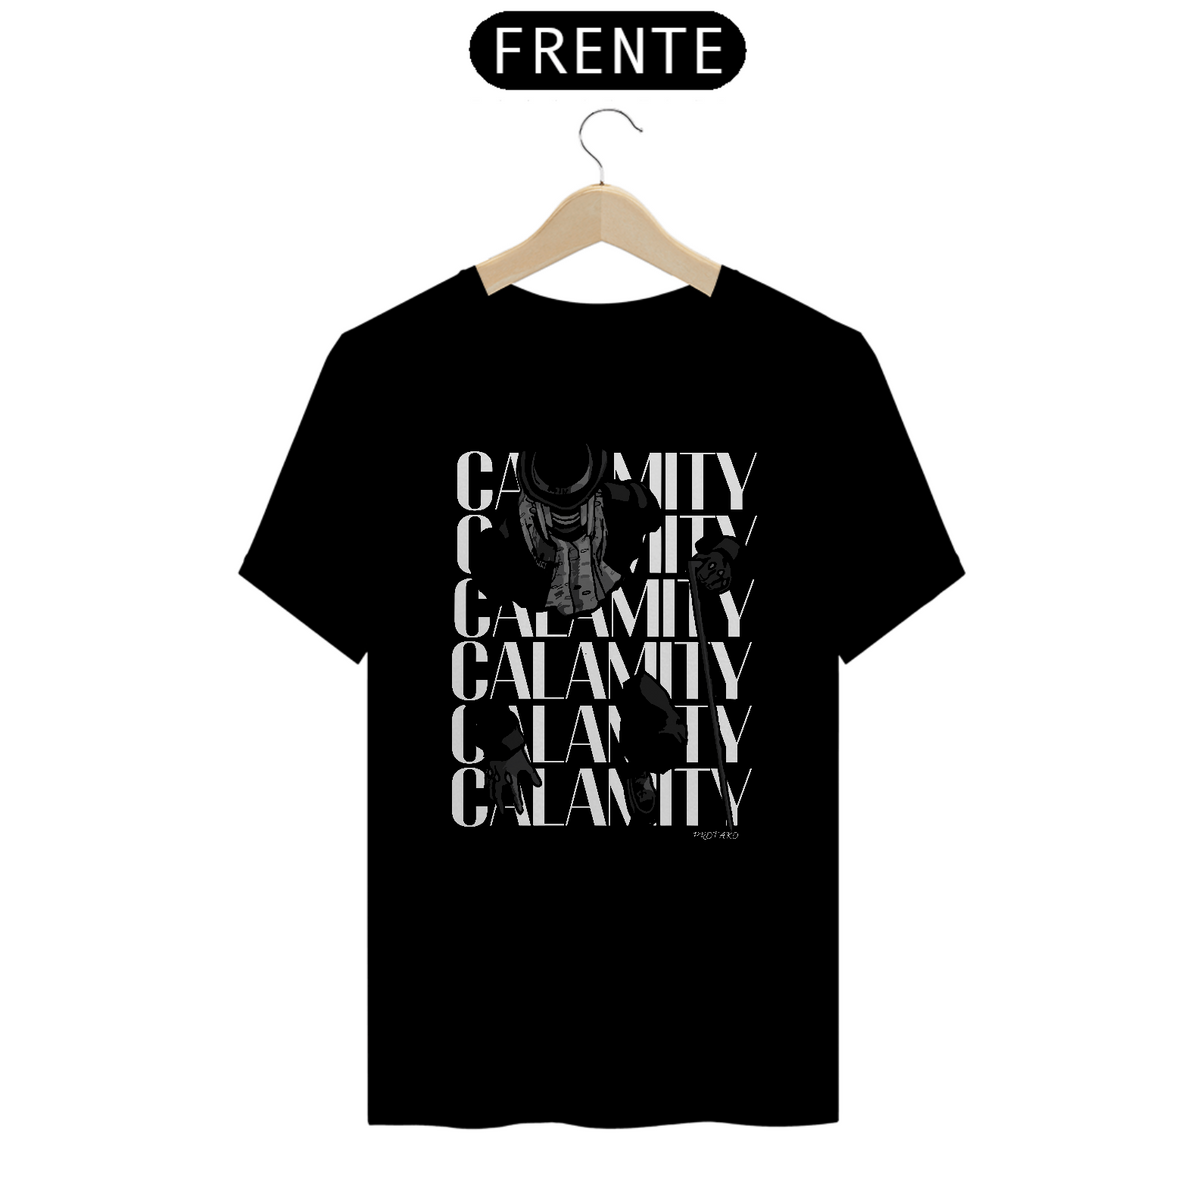 Nome do produto: Camiseta Calamity Frente